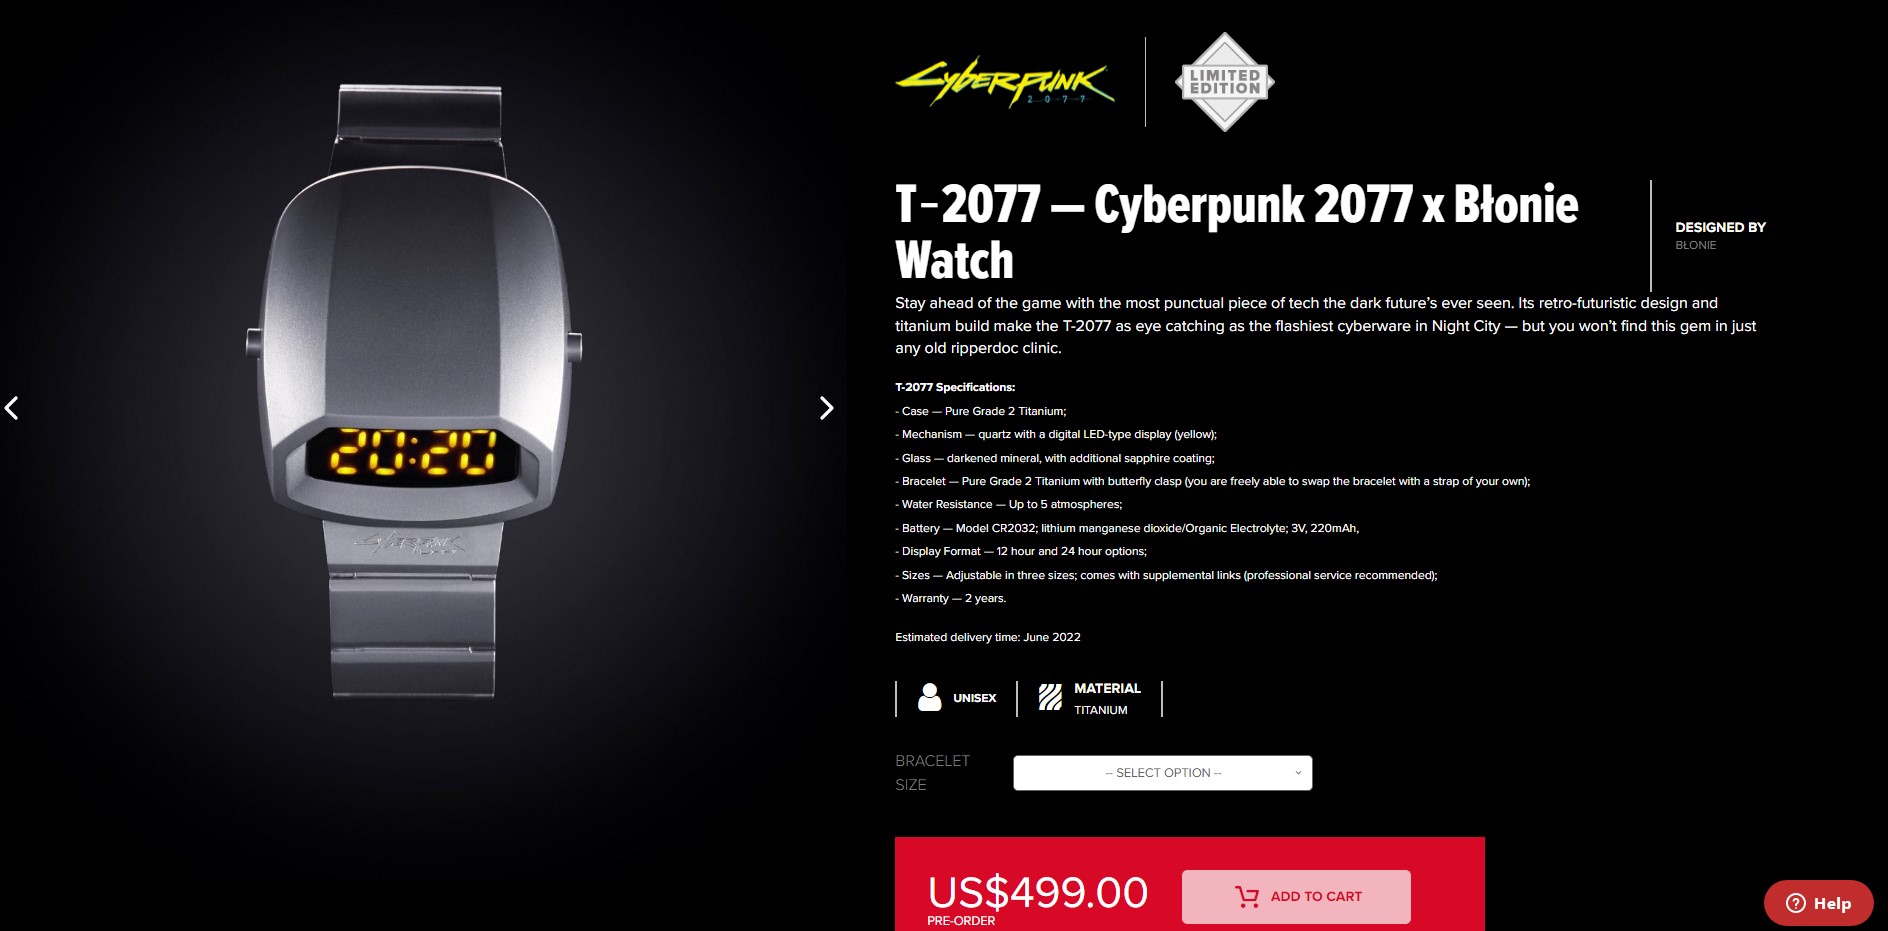 CDPR推出《赛专朋克2077》怀念足表 卖价499好元